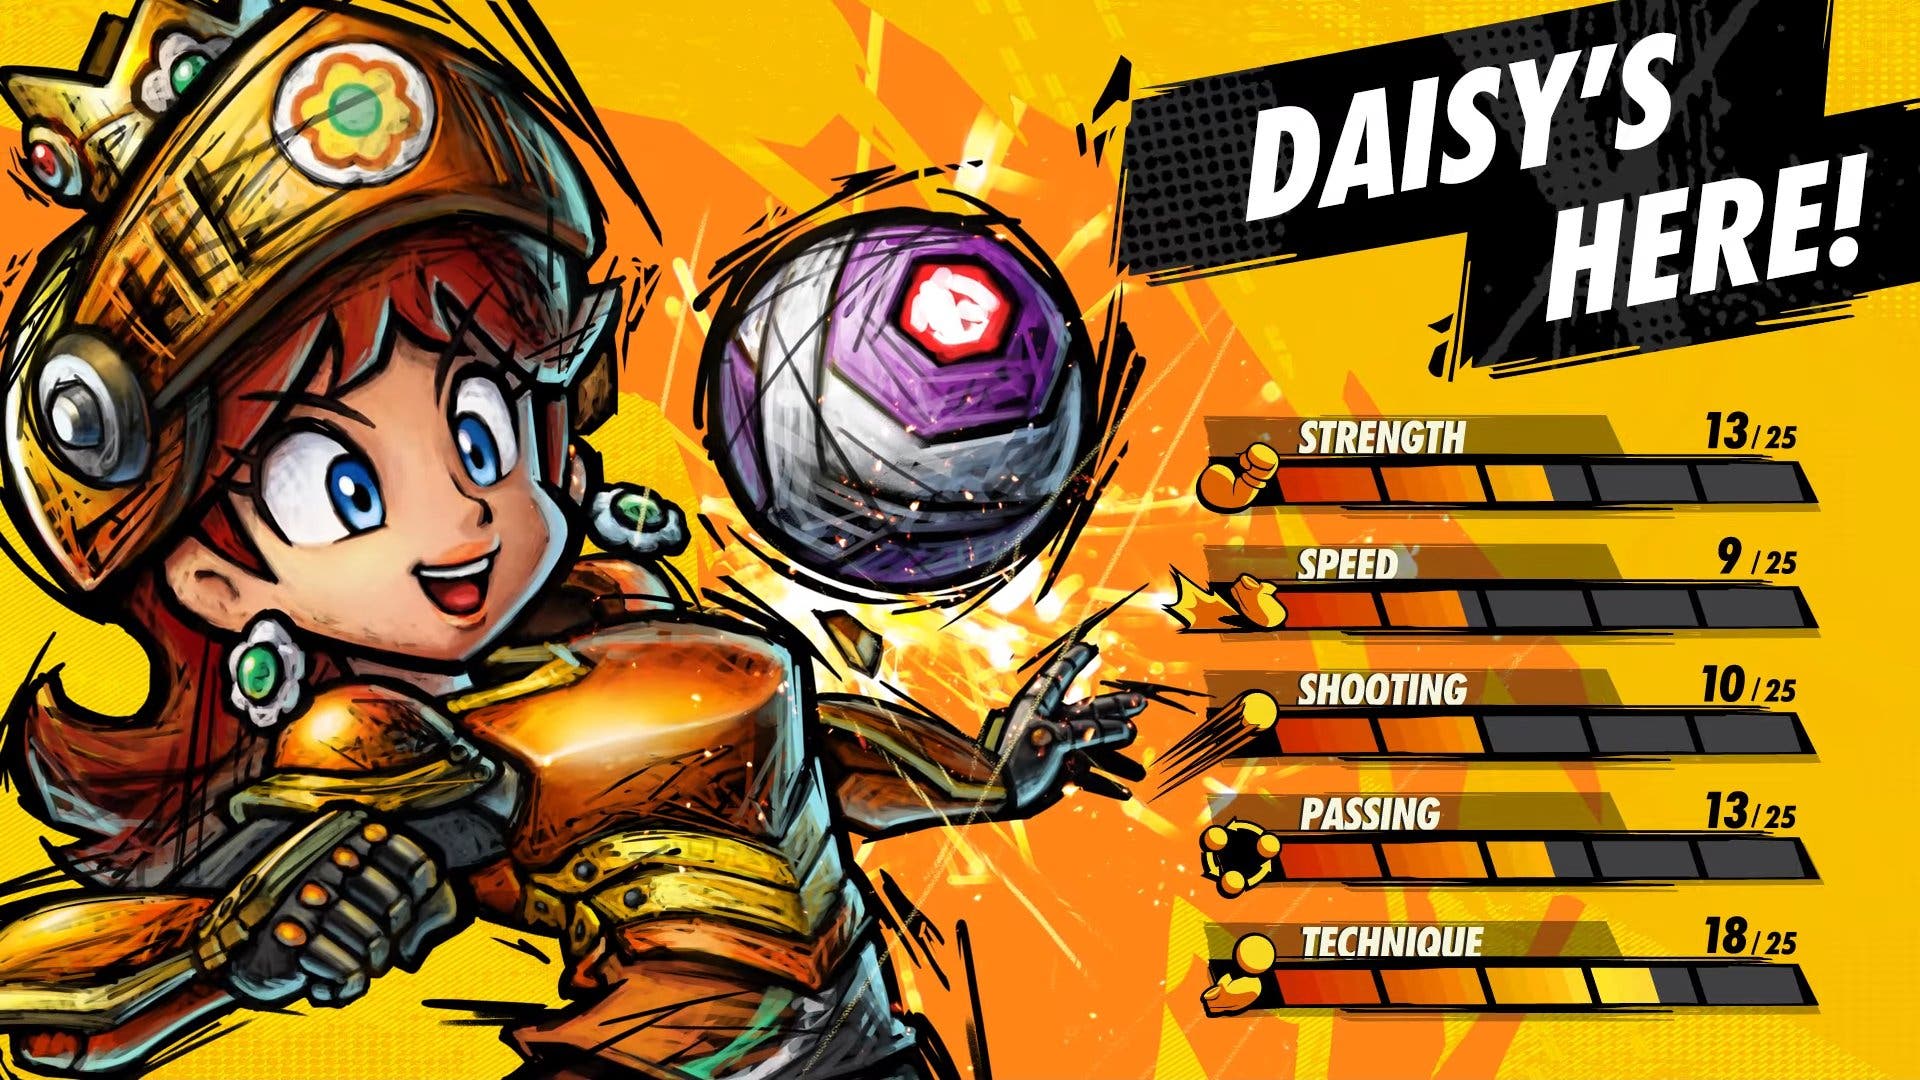 Daisy confirma su llegada a Mario Strikers: Battle League Football, entre otras novedades